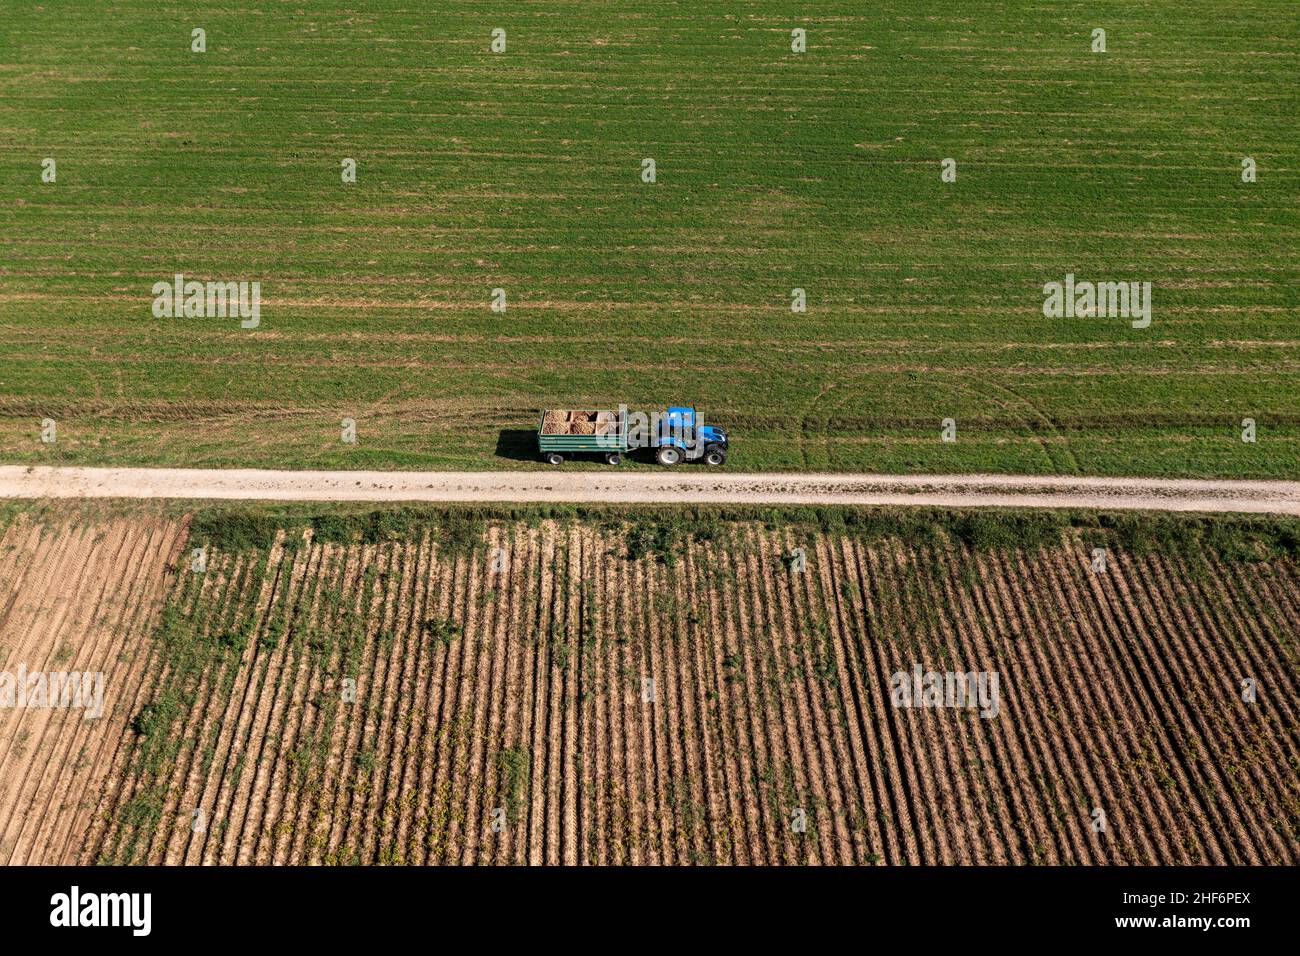 Vue aérienne sur un tracteur de récolte de pommes de terre, avec beaucoup de pommes de terre empilées Banque D'Images